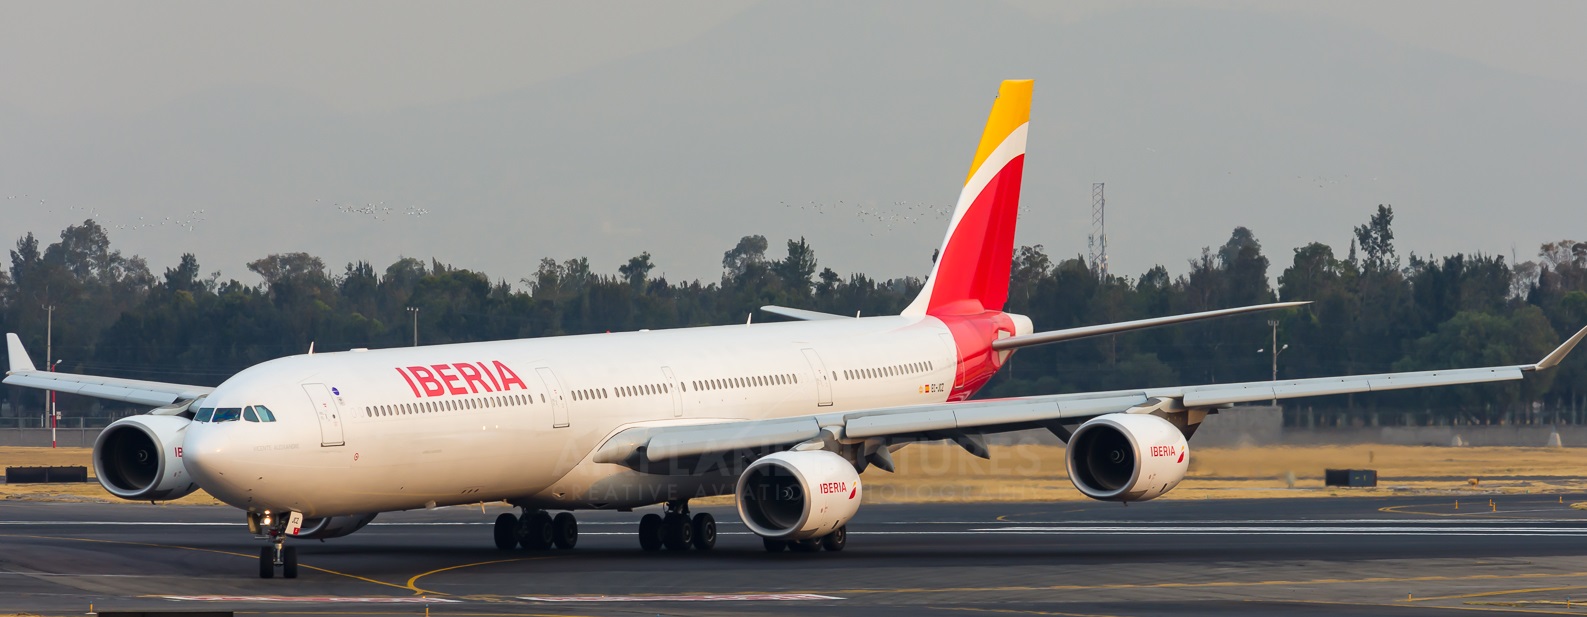 Valoracion Vuelo Iberia Airbus A340 Turama